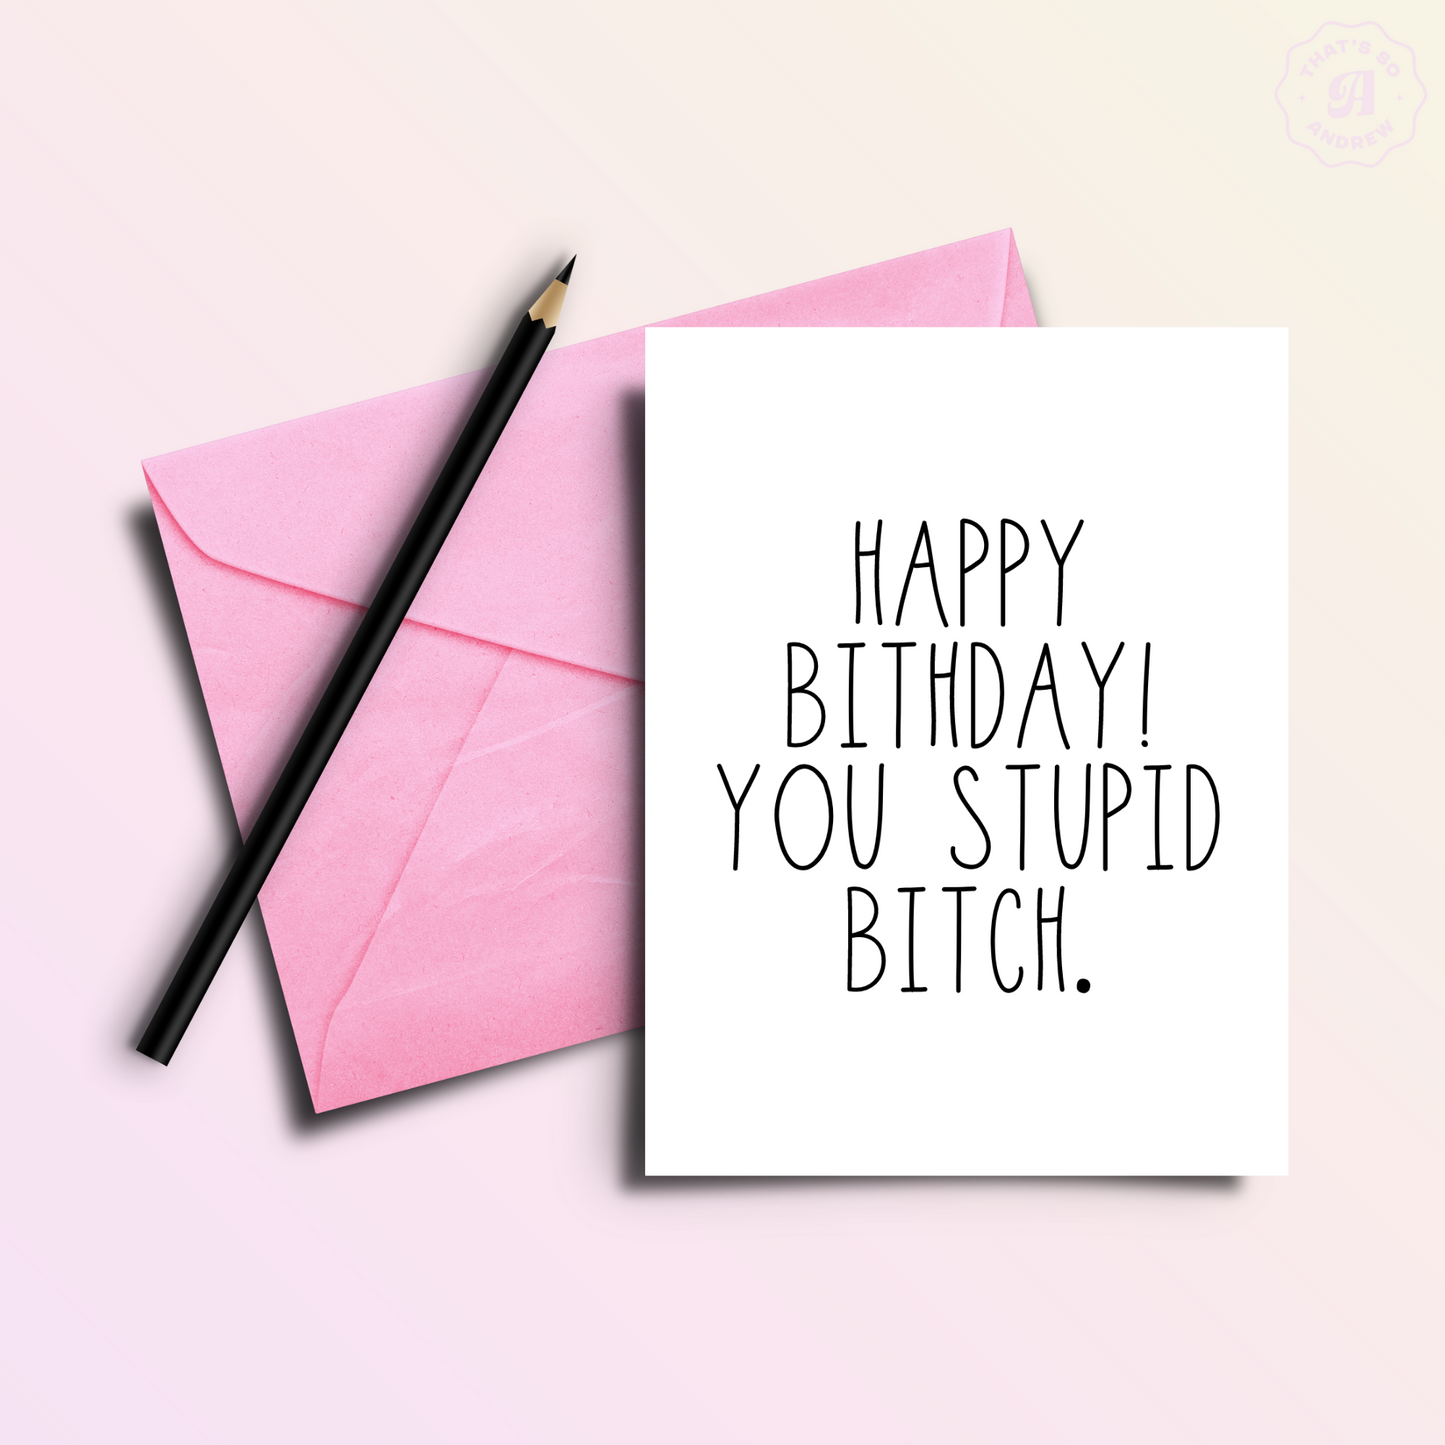 Happy Birthday You Stupid B*tch Birthday Card